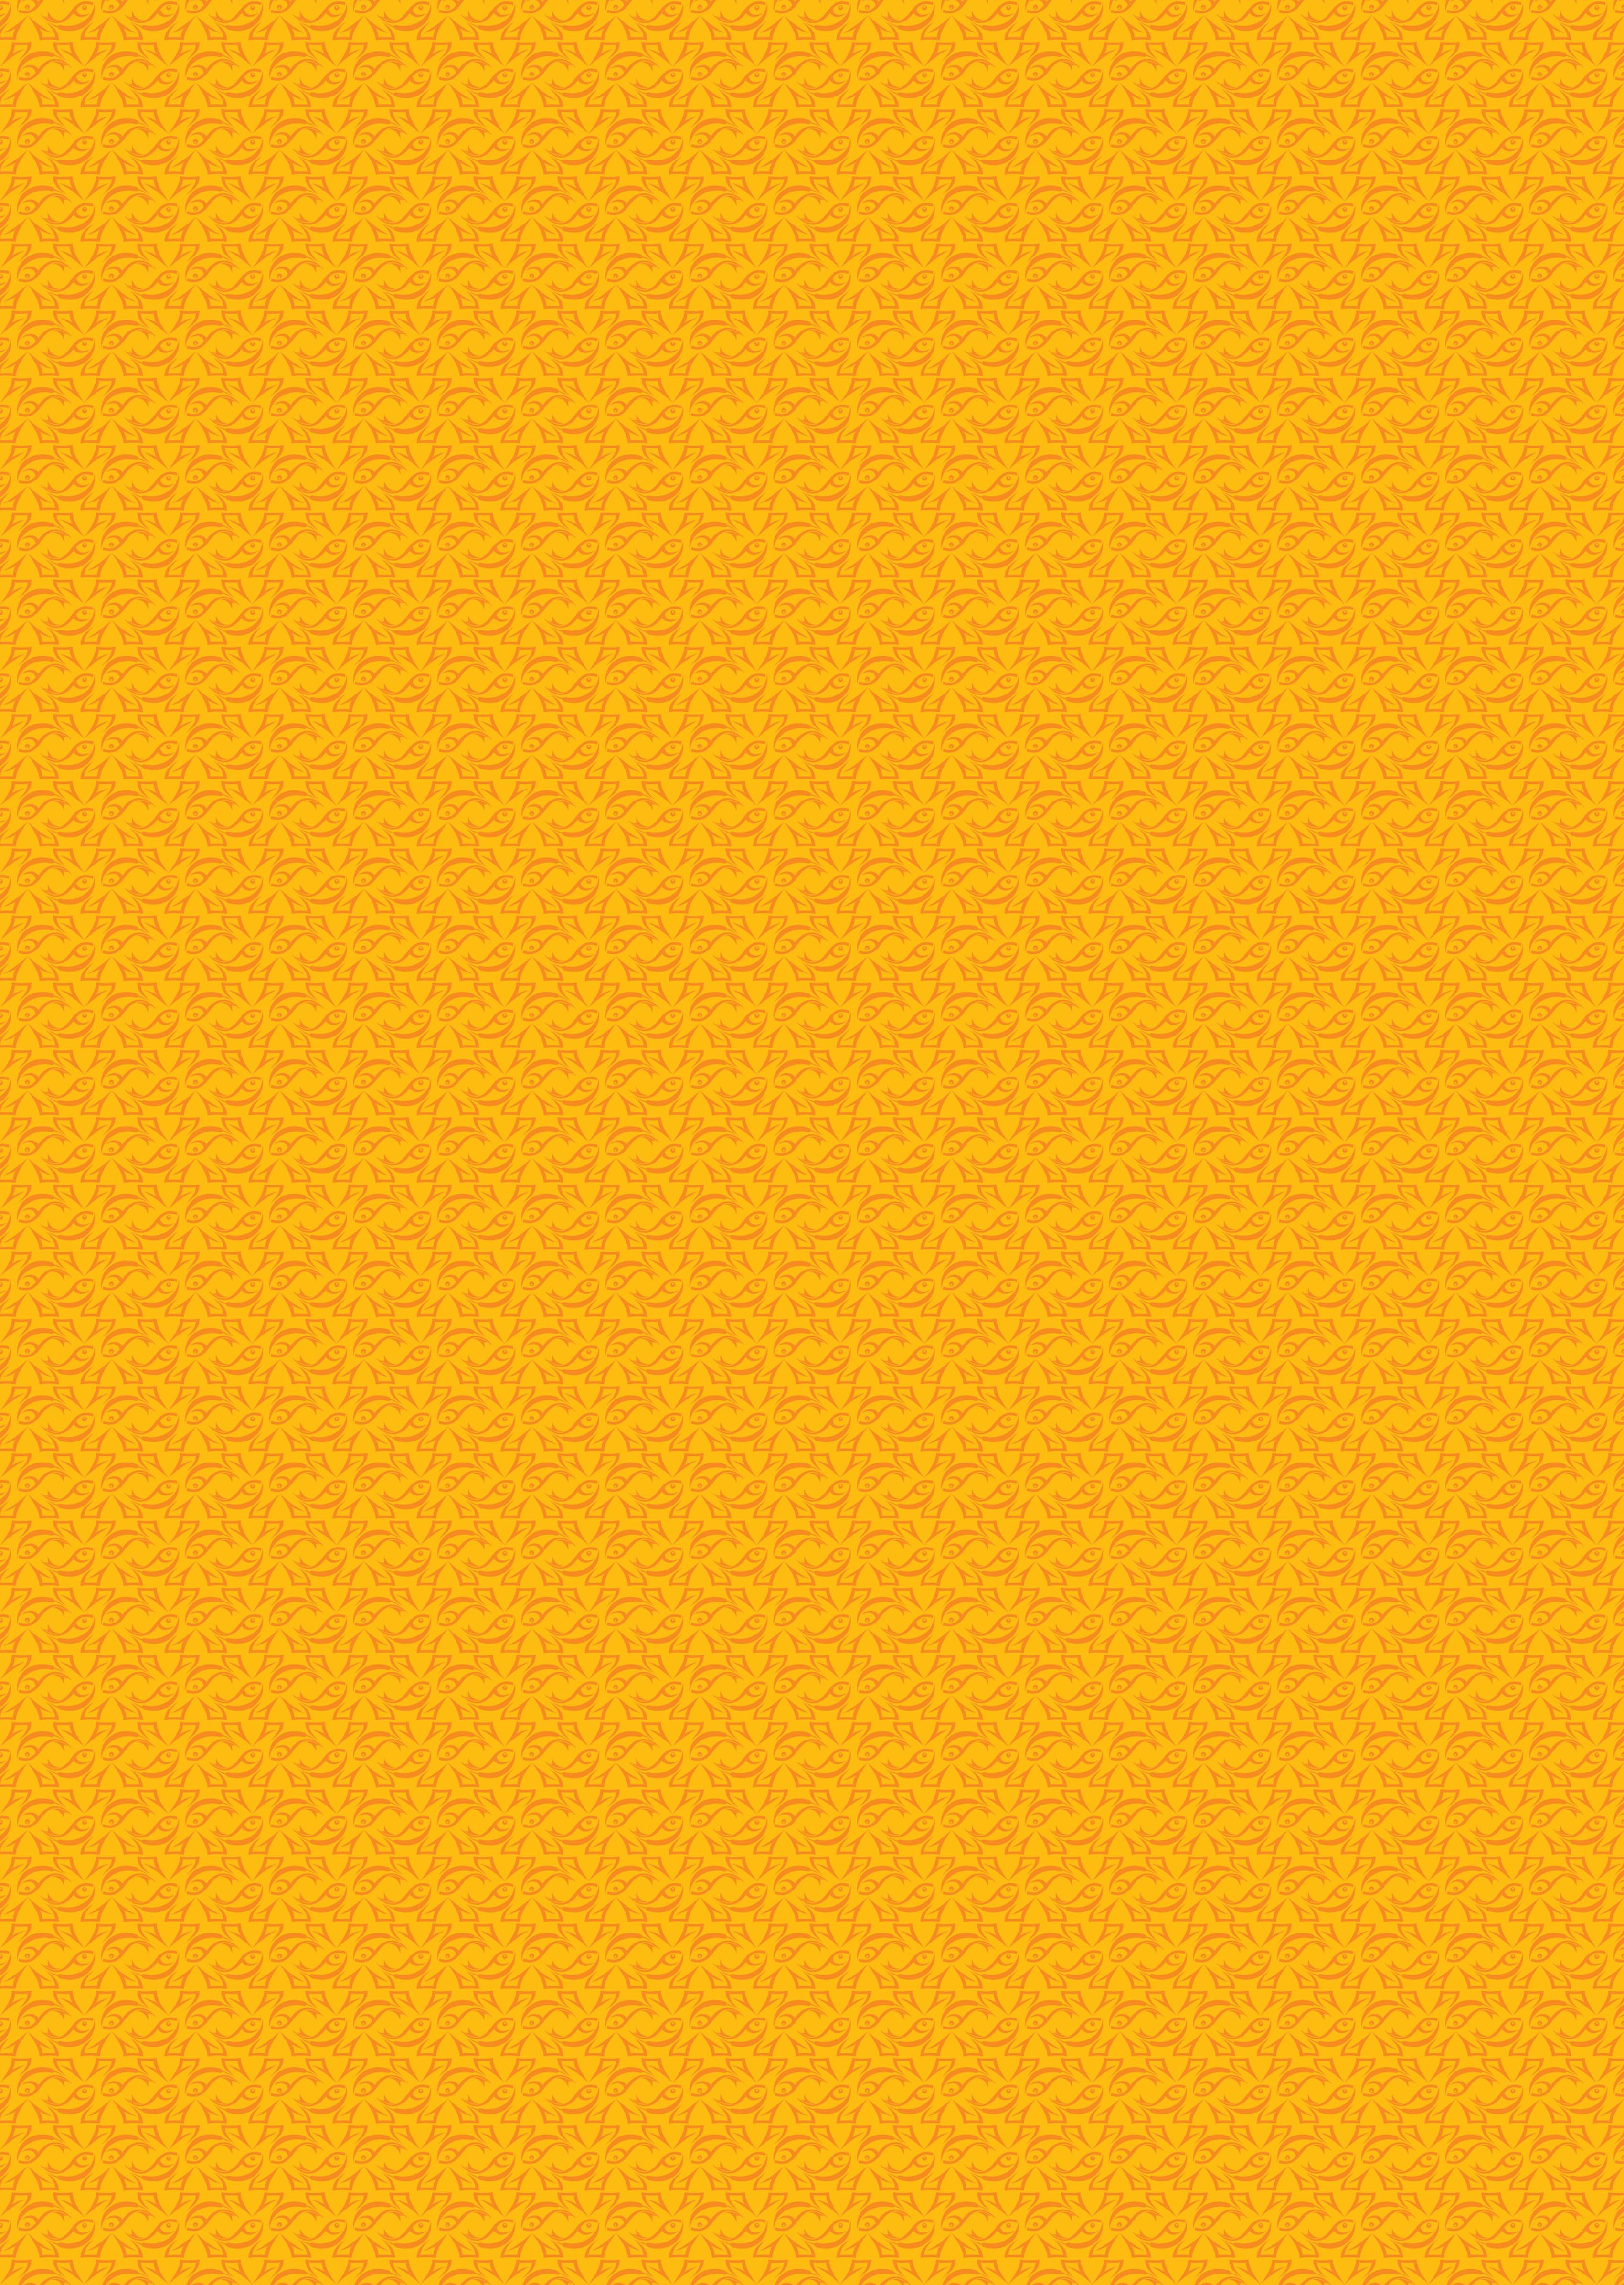 Background Kuning Muda - Background kuning muda 2 » Background Check